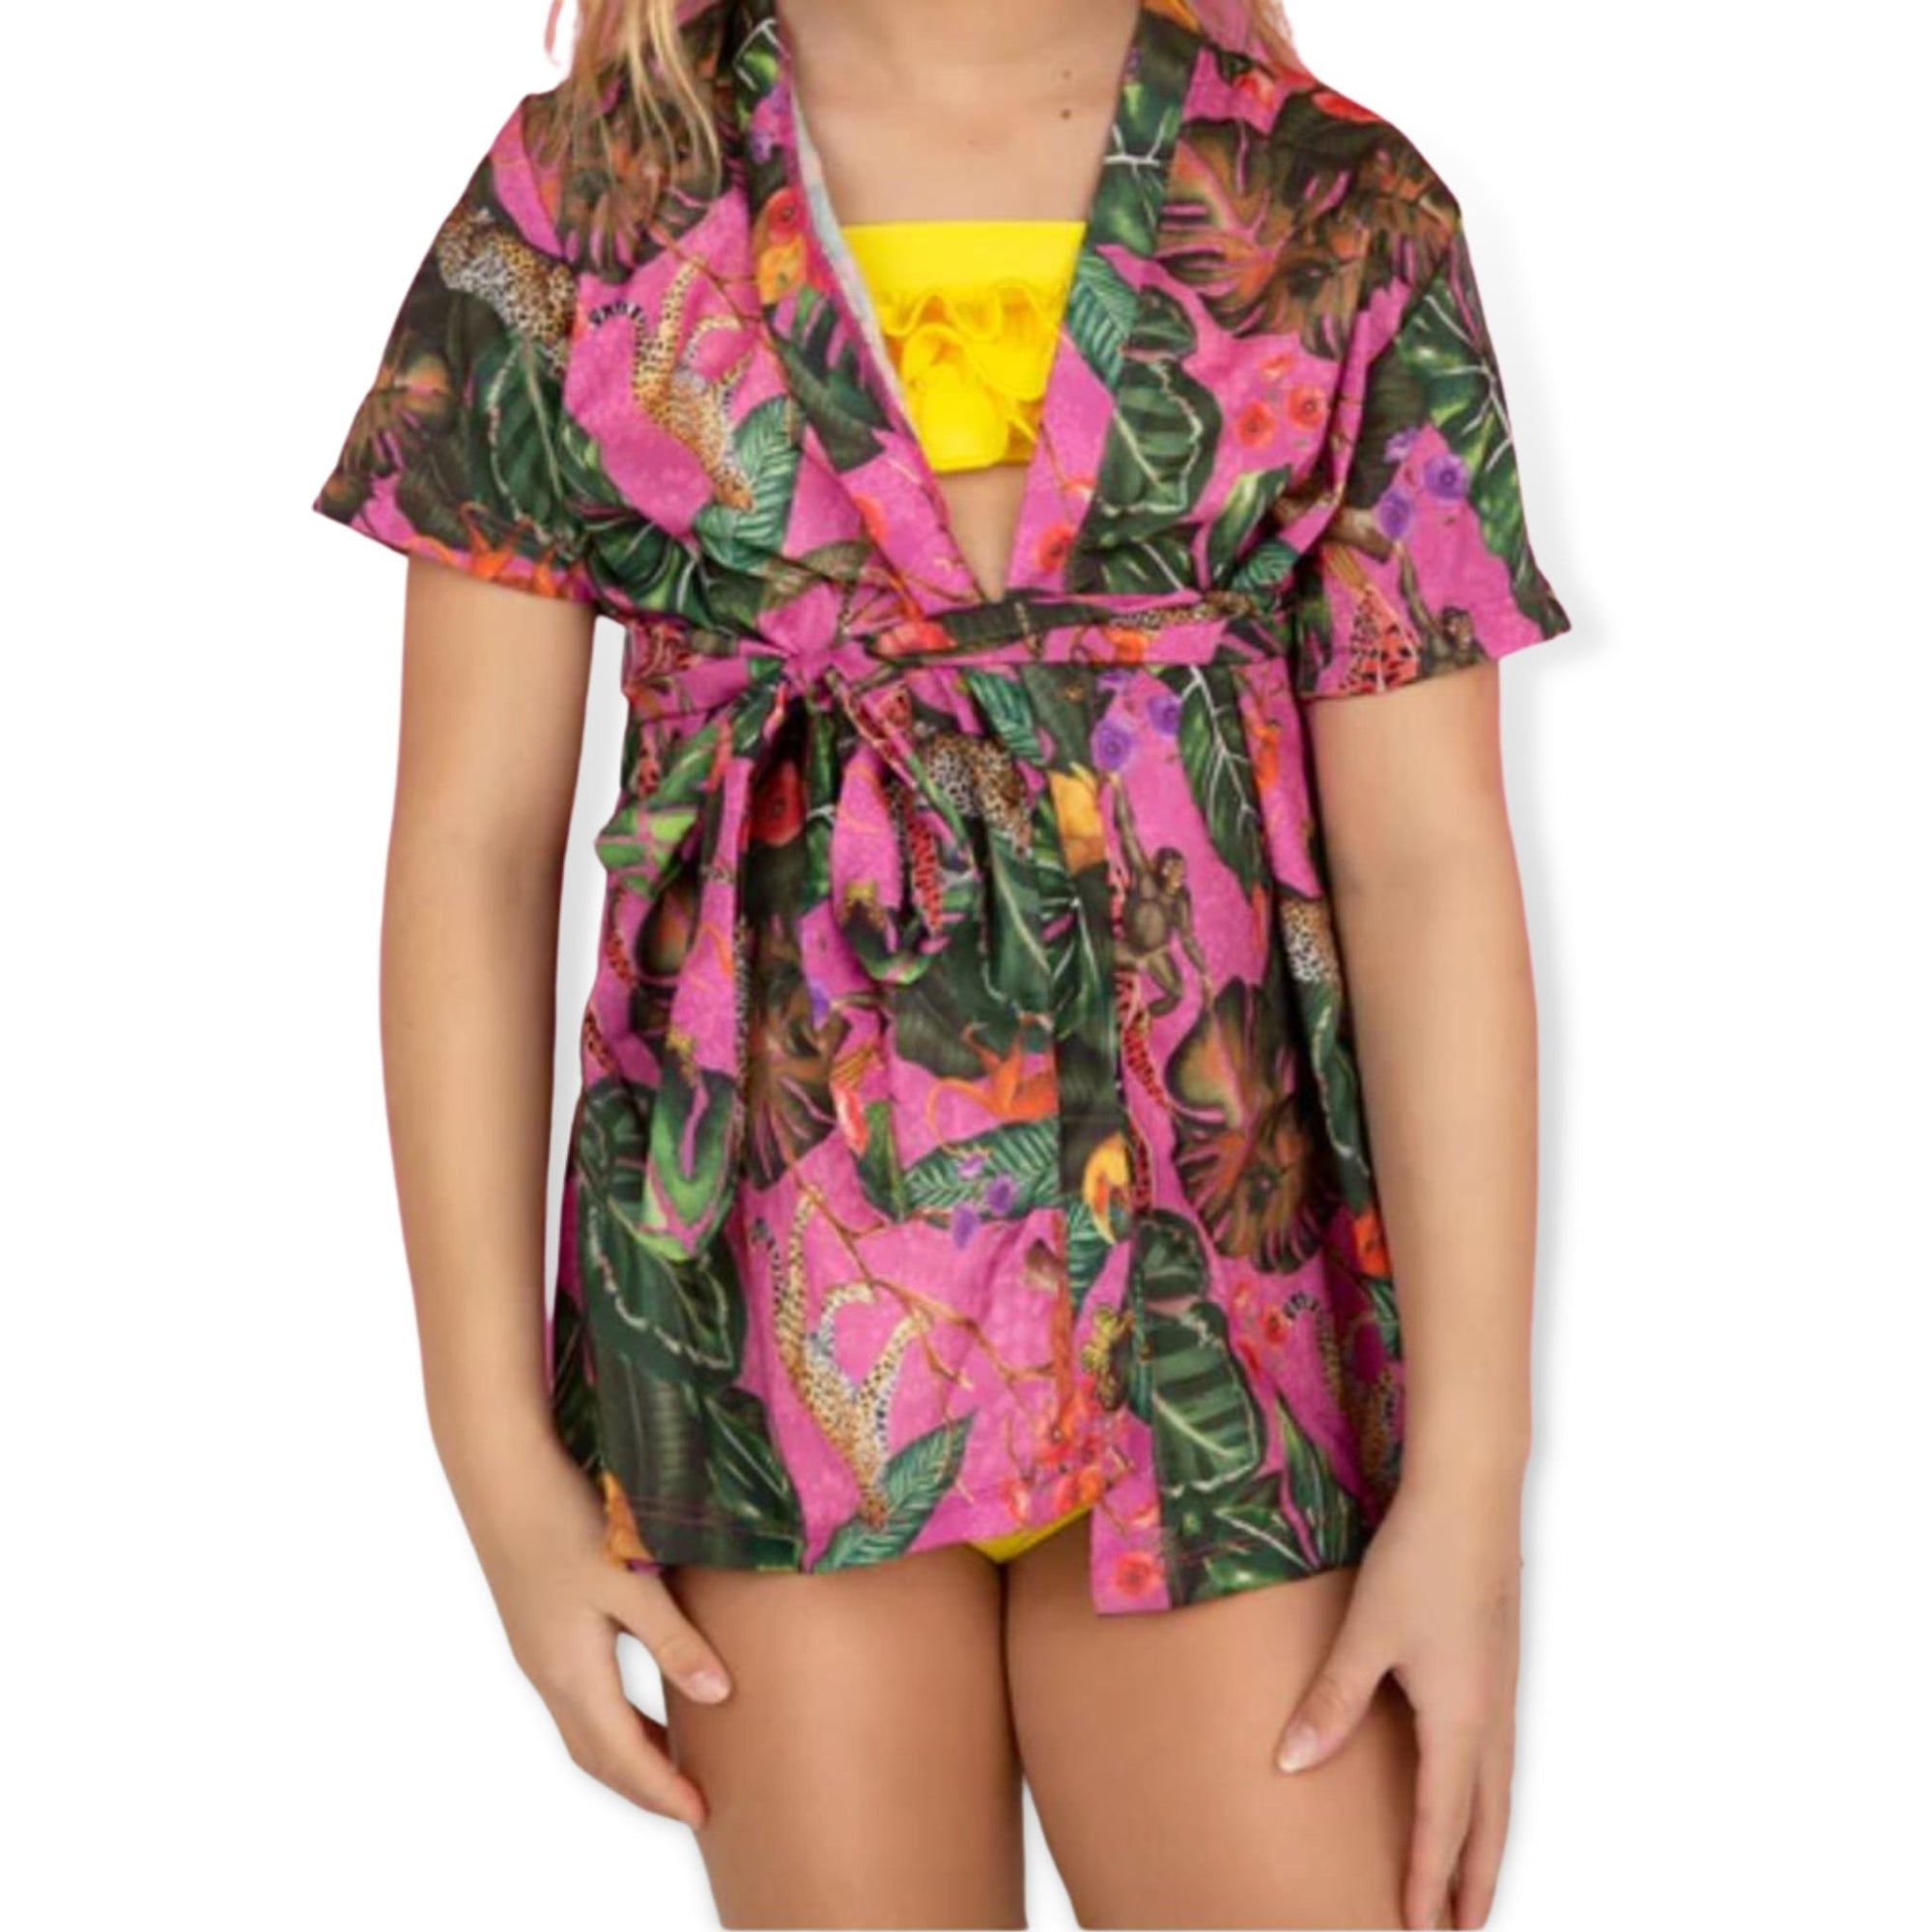 Planet Sea Jungle Long Sleeves Kimono - a Spirit Animal - Long Sleeve Top $60-$90 10 12